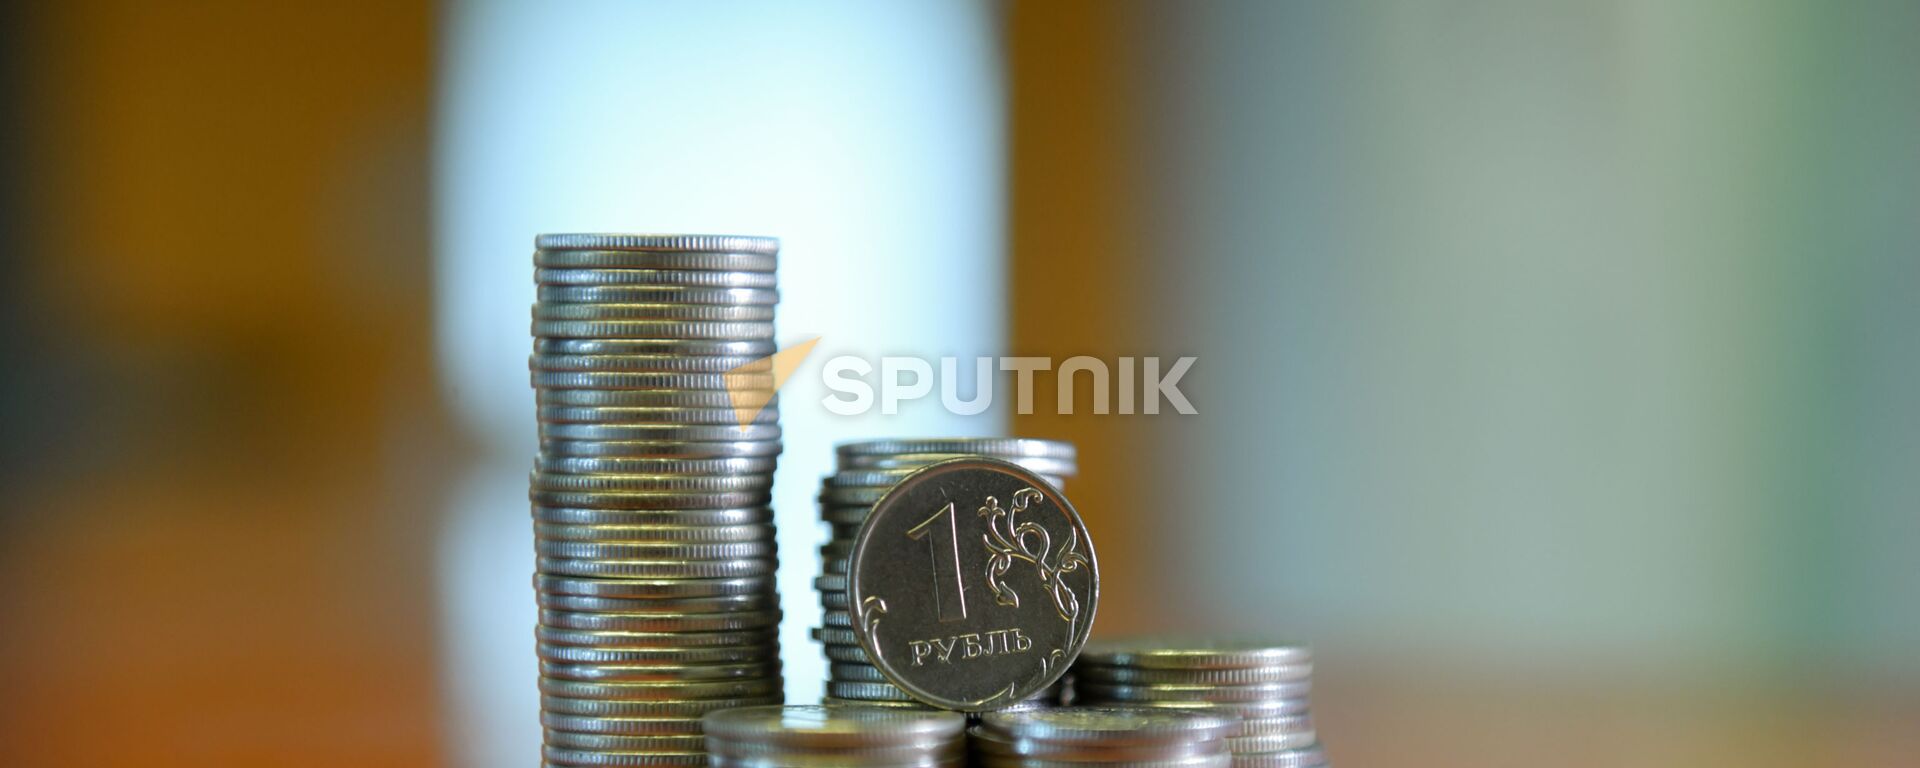 Монета номиналом один рубль  - Sputnik Абхазия, 1920, 04.09.2021